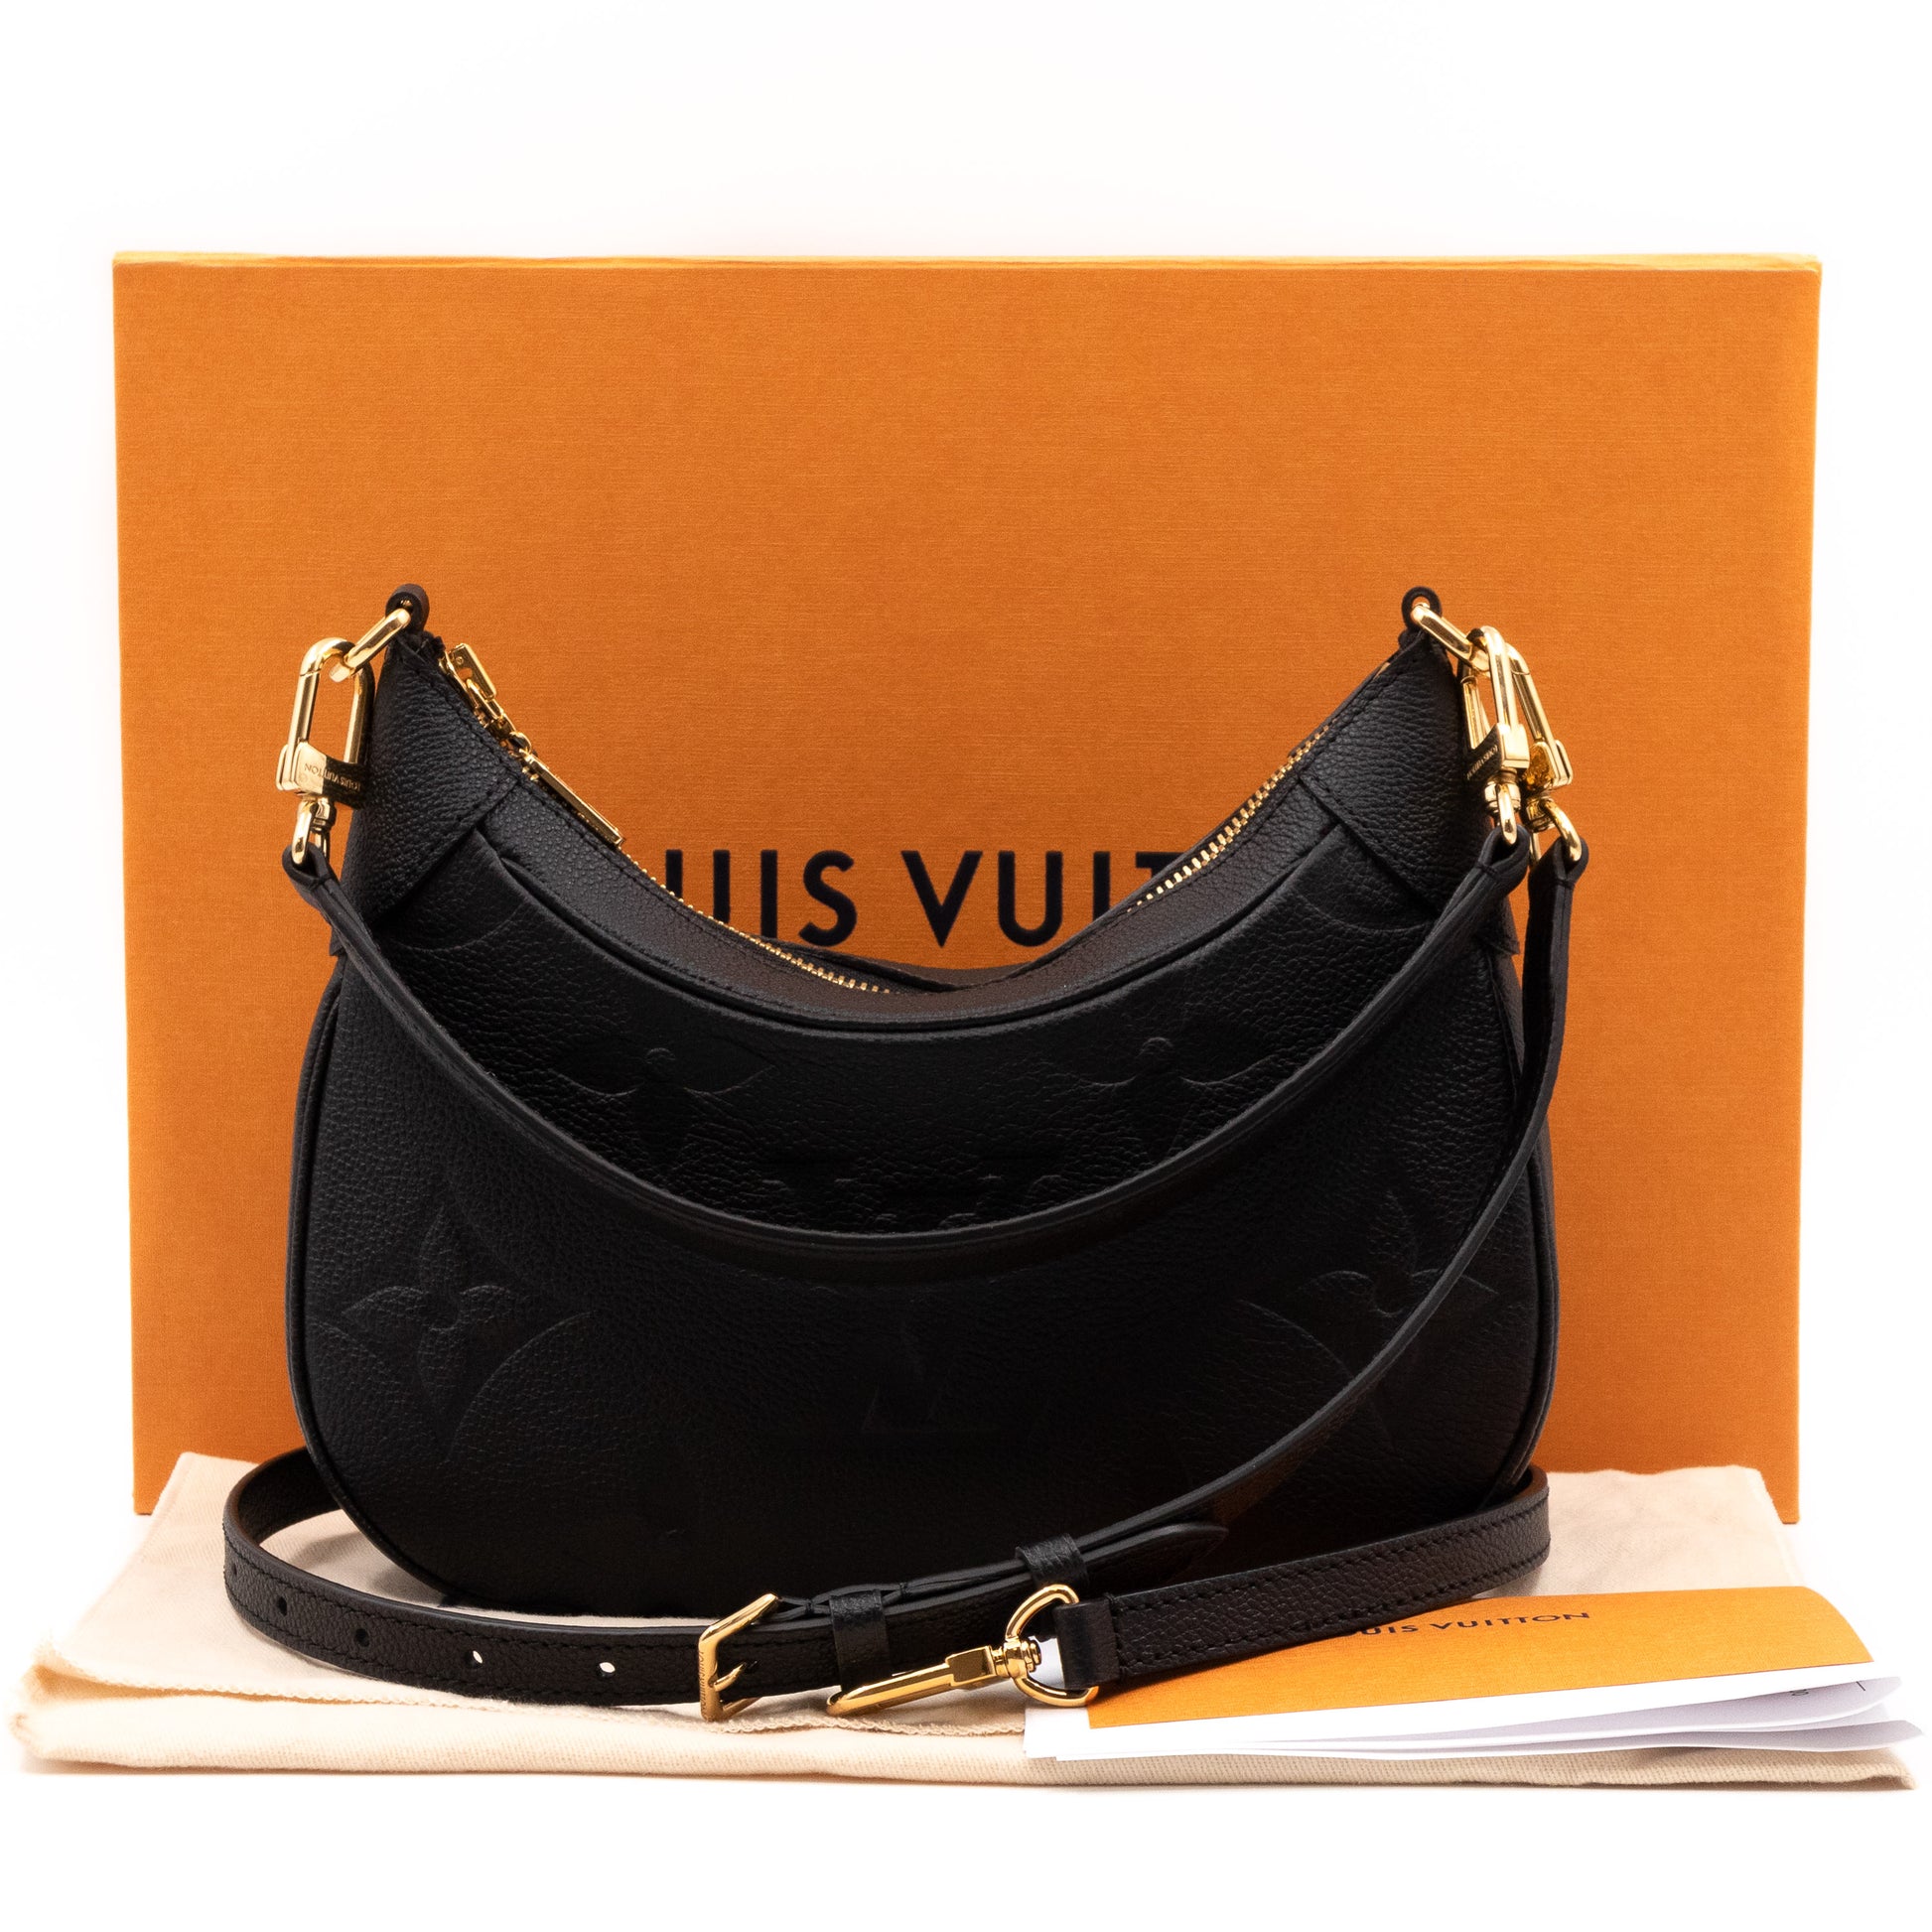 LOUIS VUITTON Bagatelle Monogram Empreinte Leather Shoulder Bag